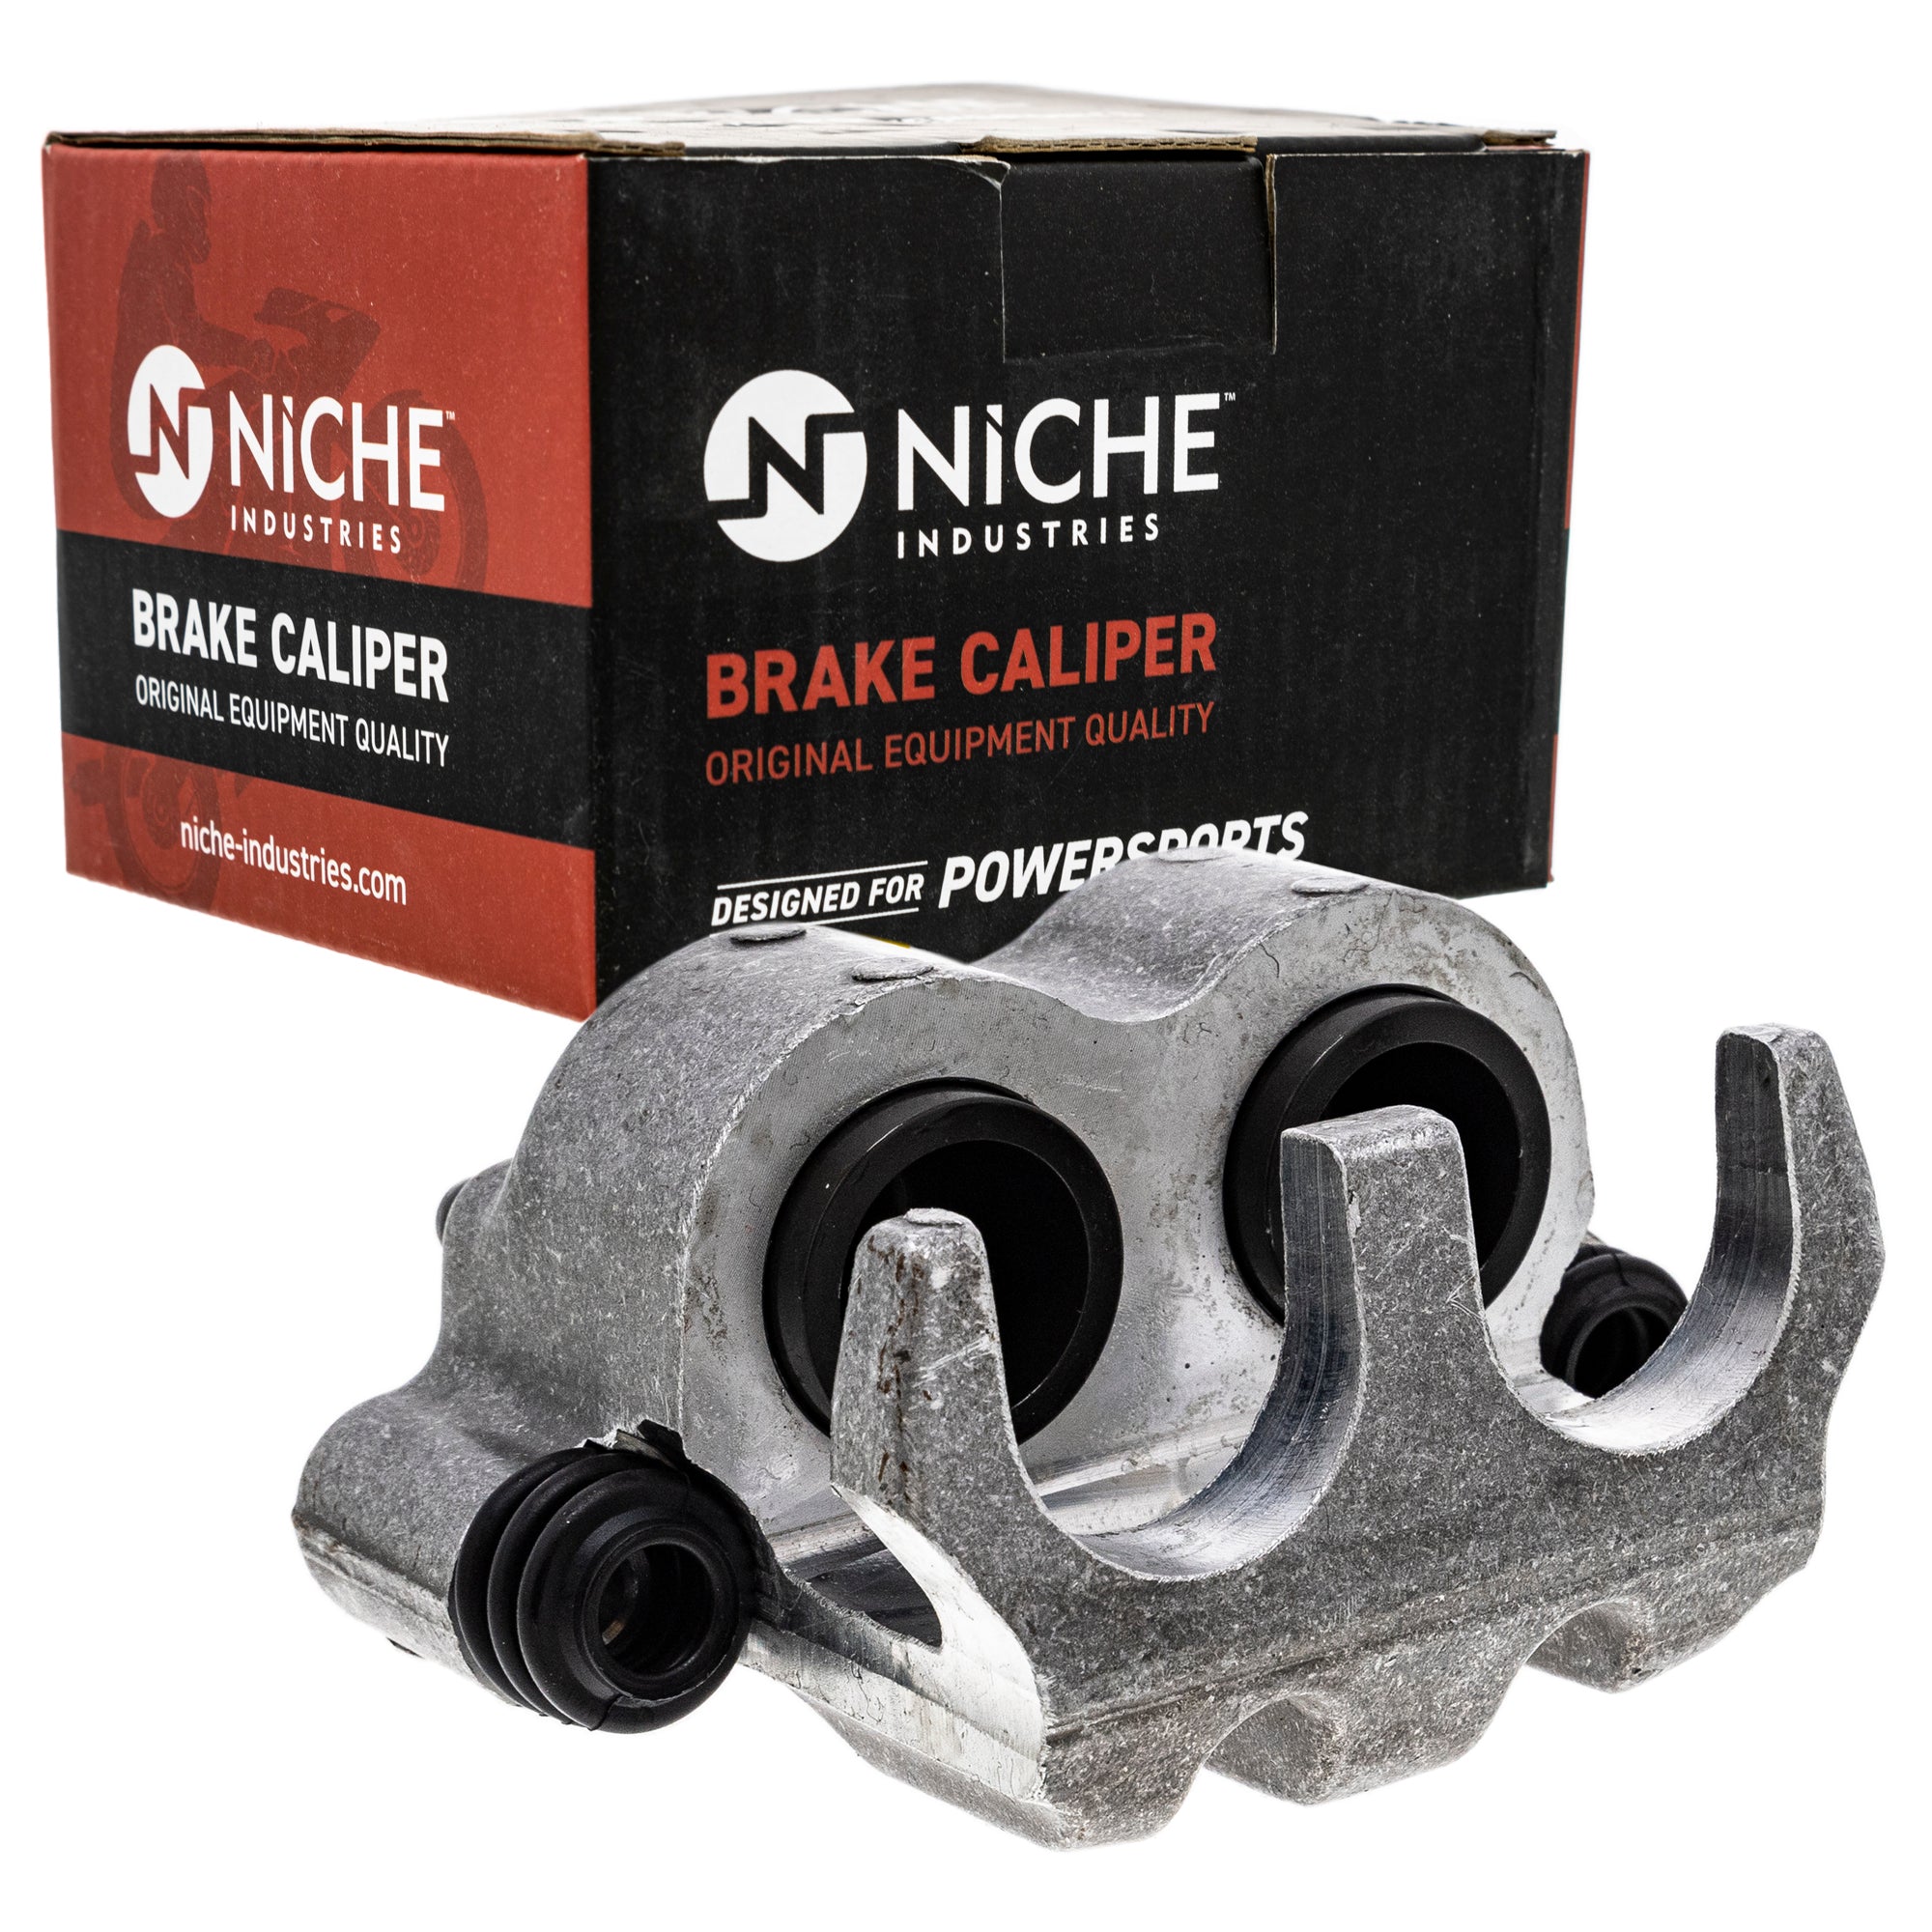 NICHE MK1001048 Brake Caliper Kit